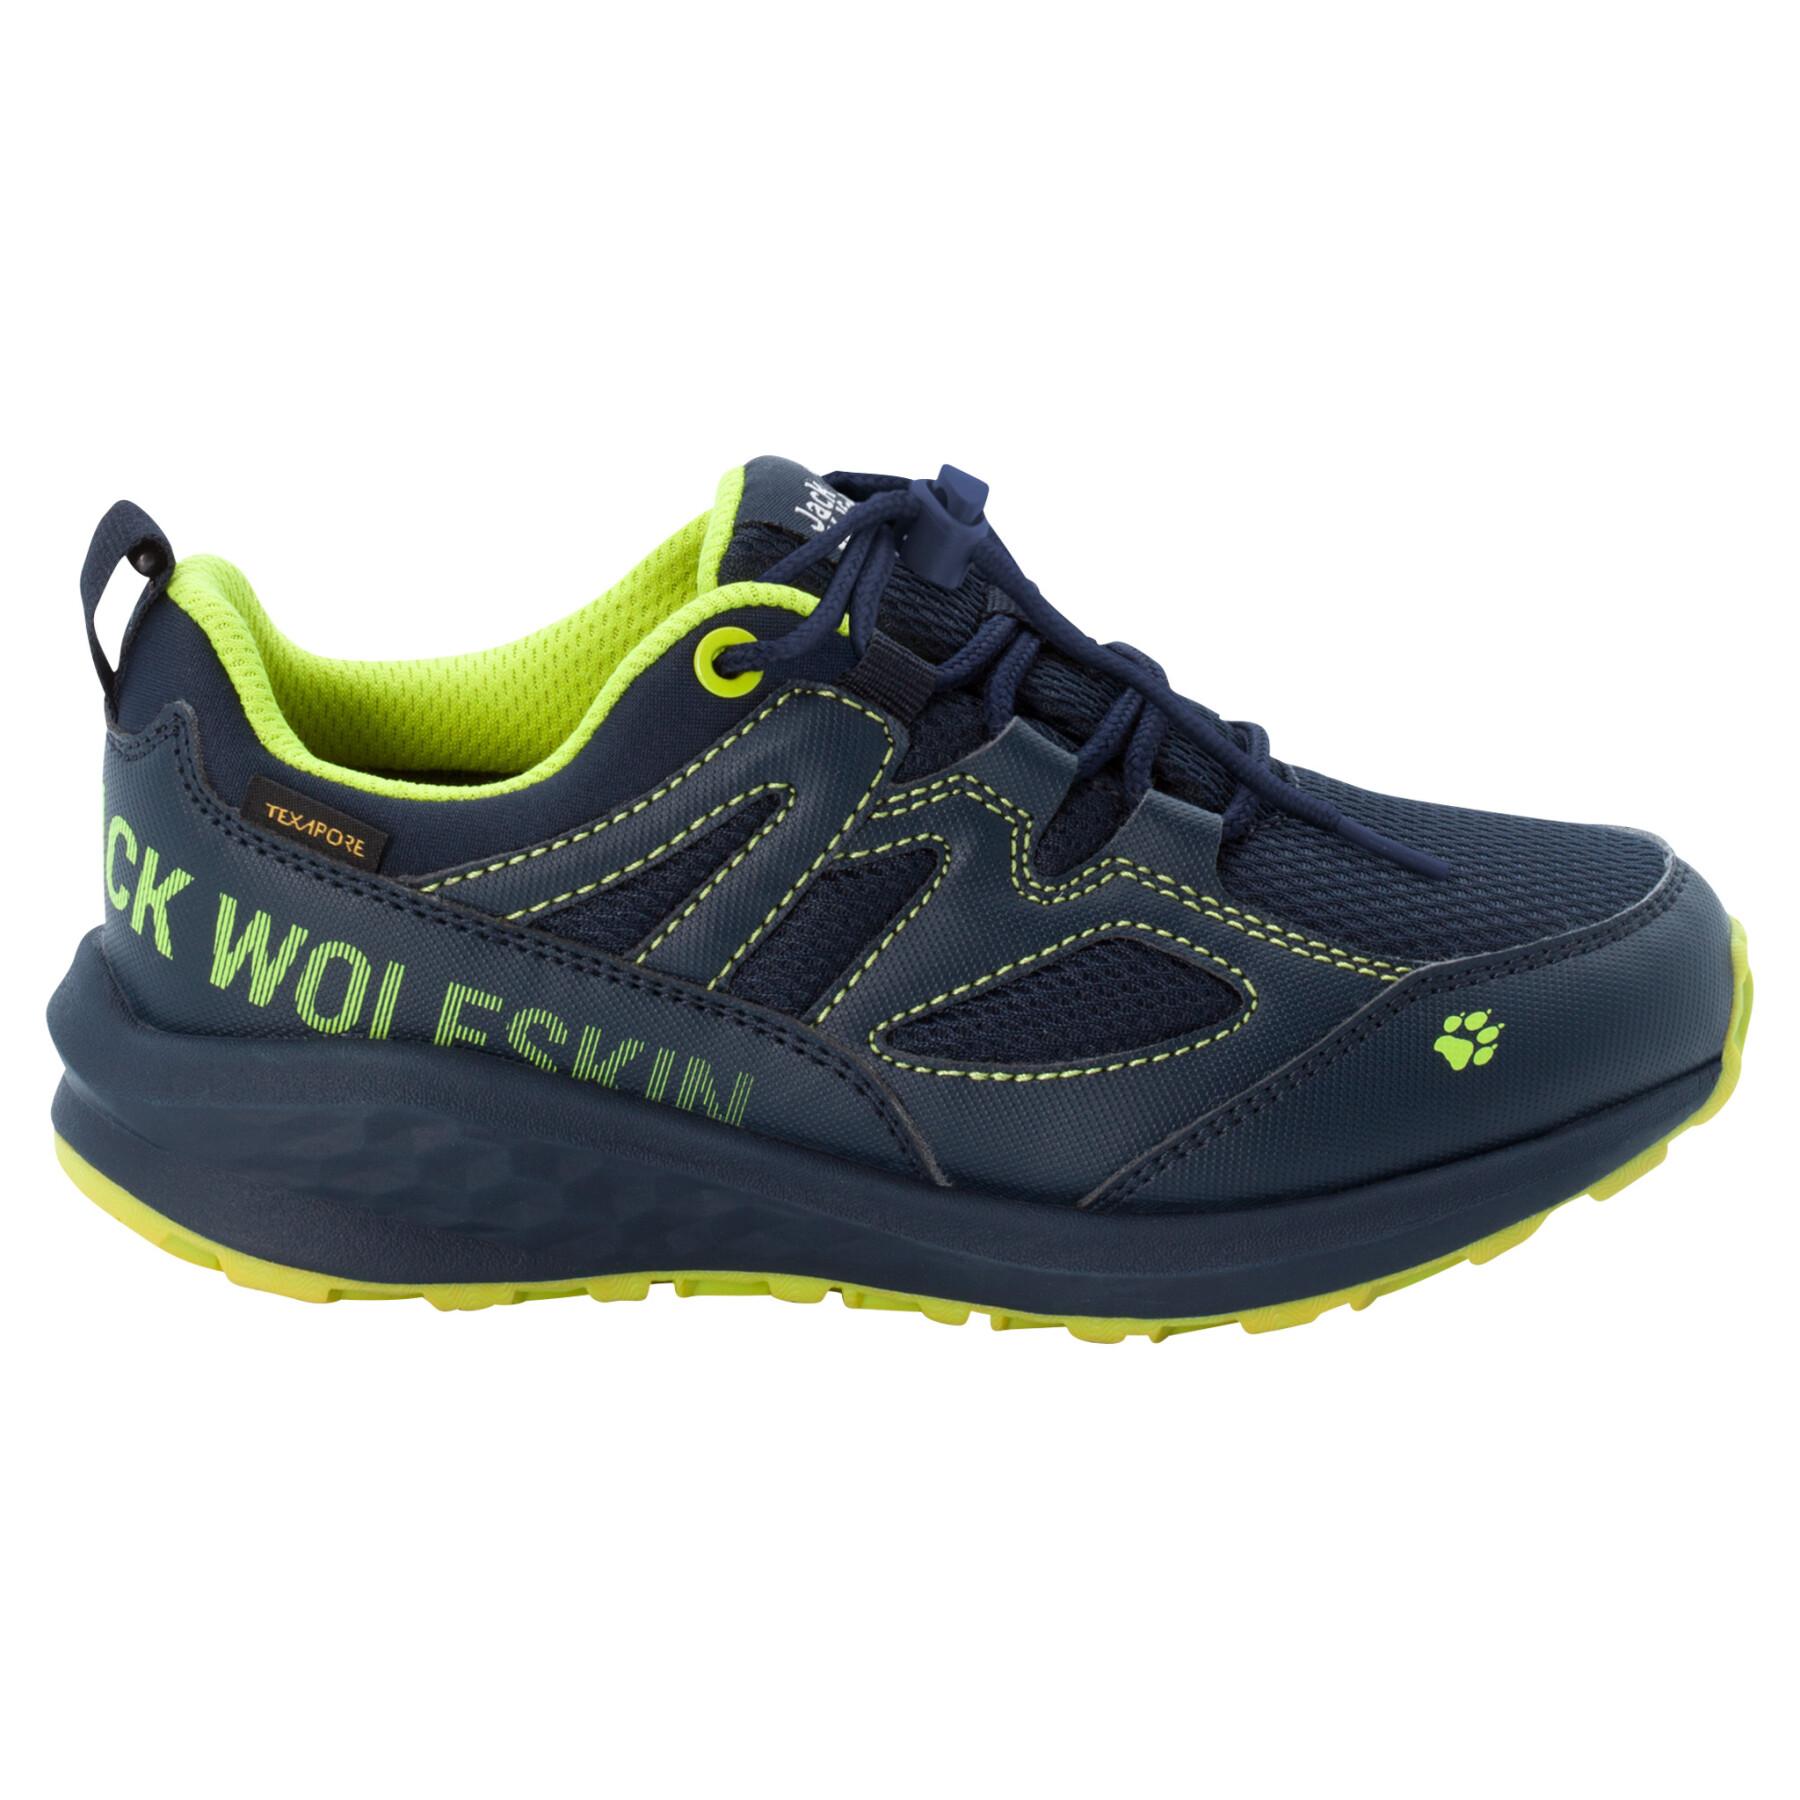 Children's hiking shoes Jack Wolfskin Unleash 4 Speed Texapore